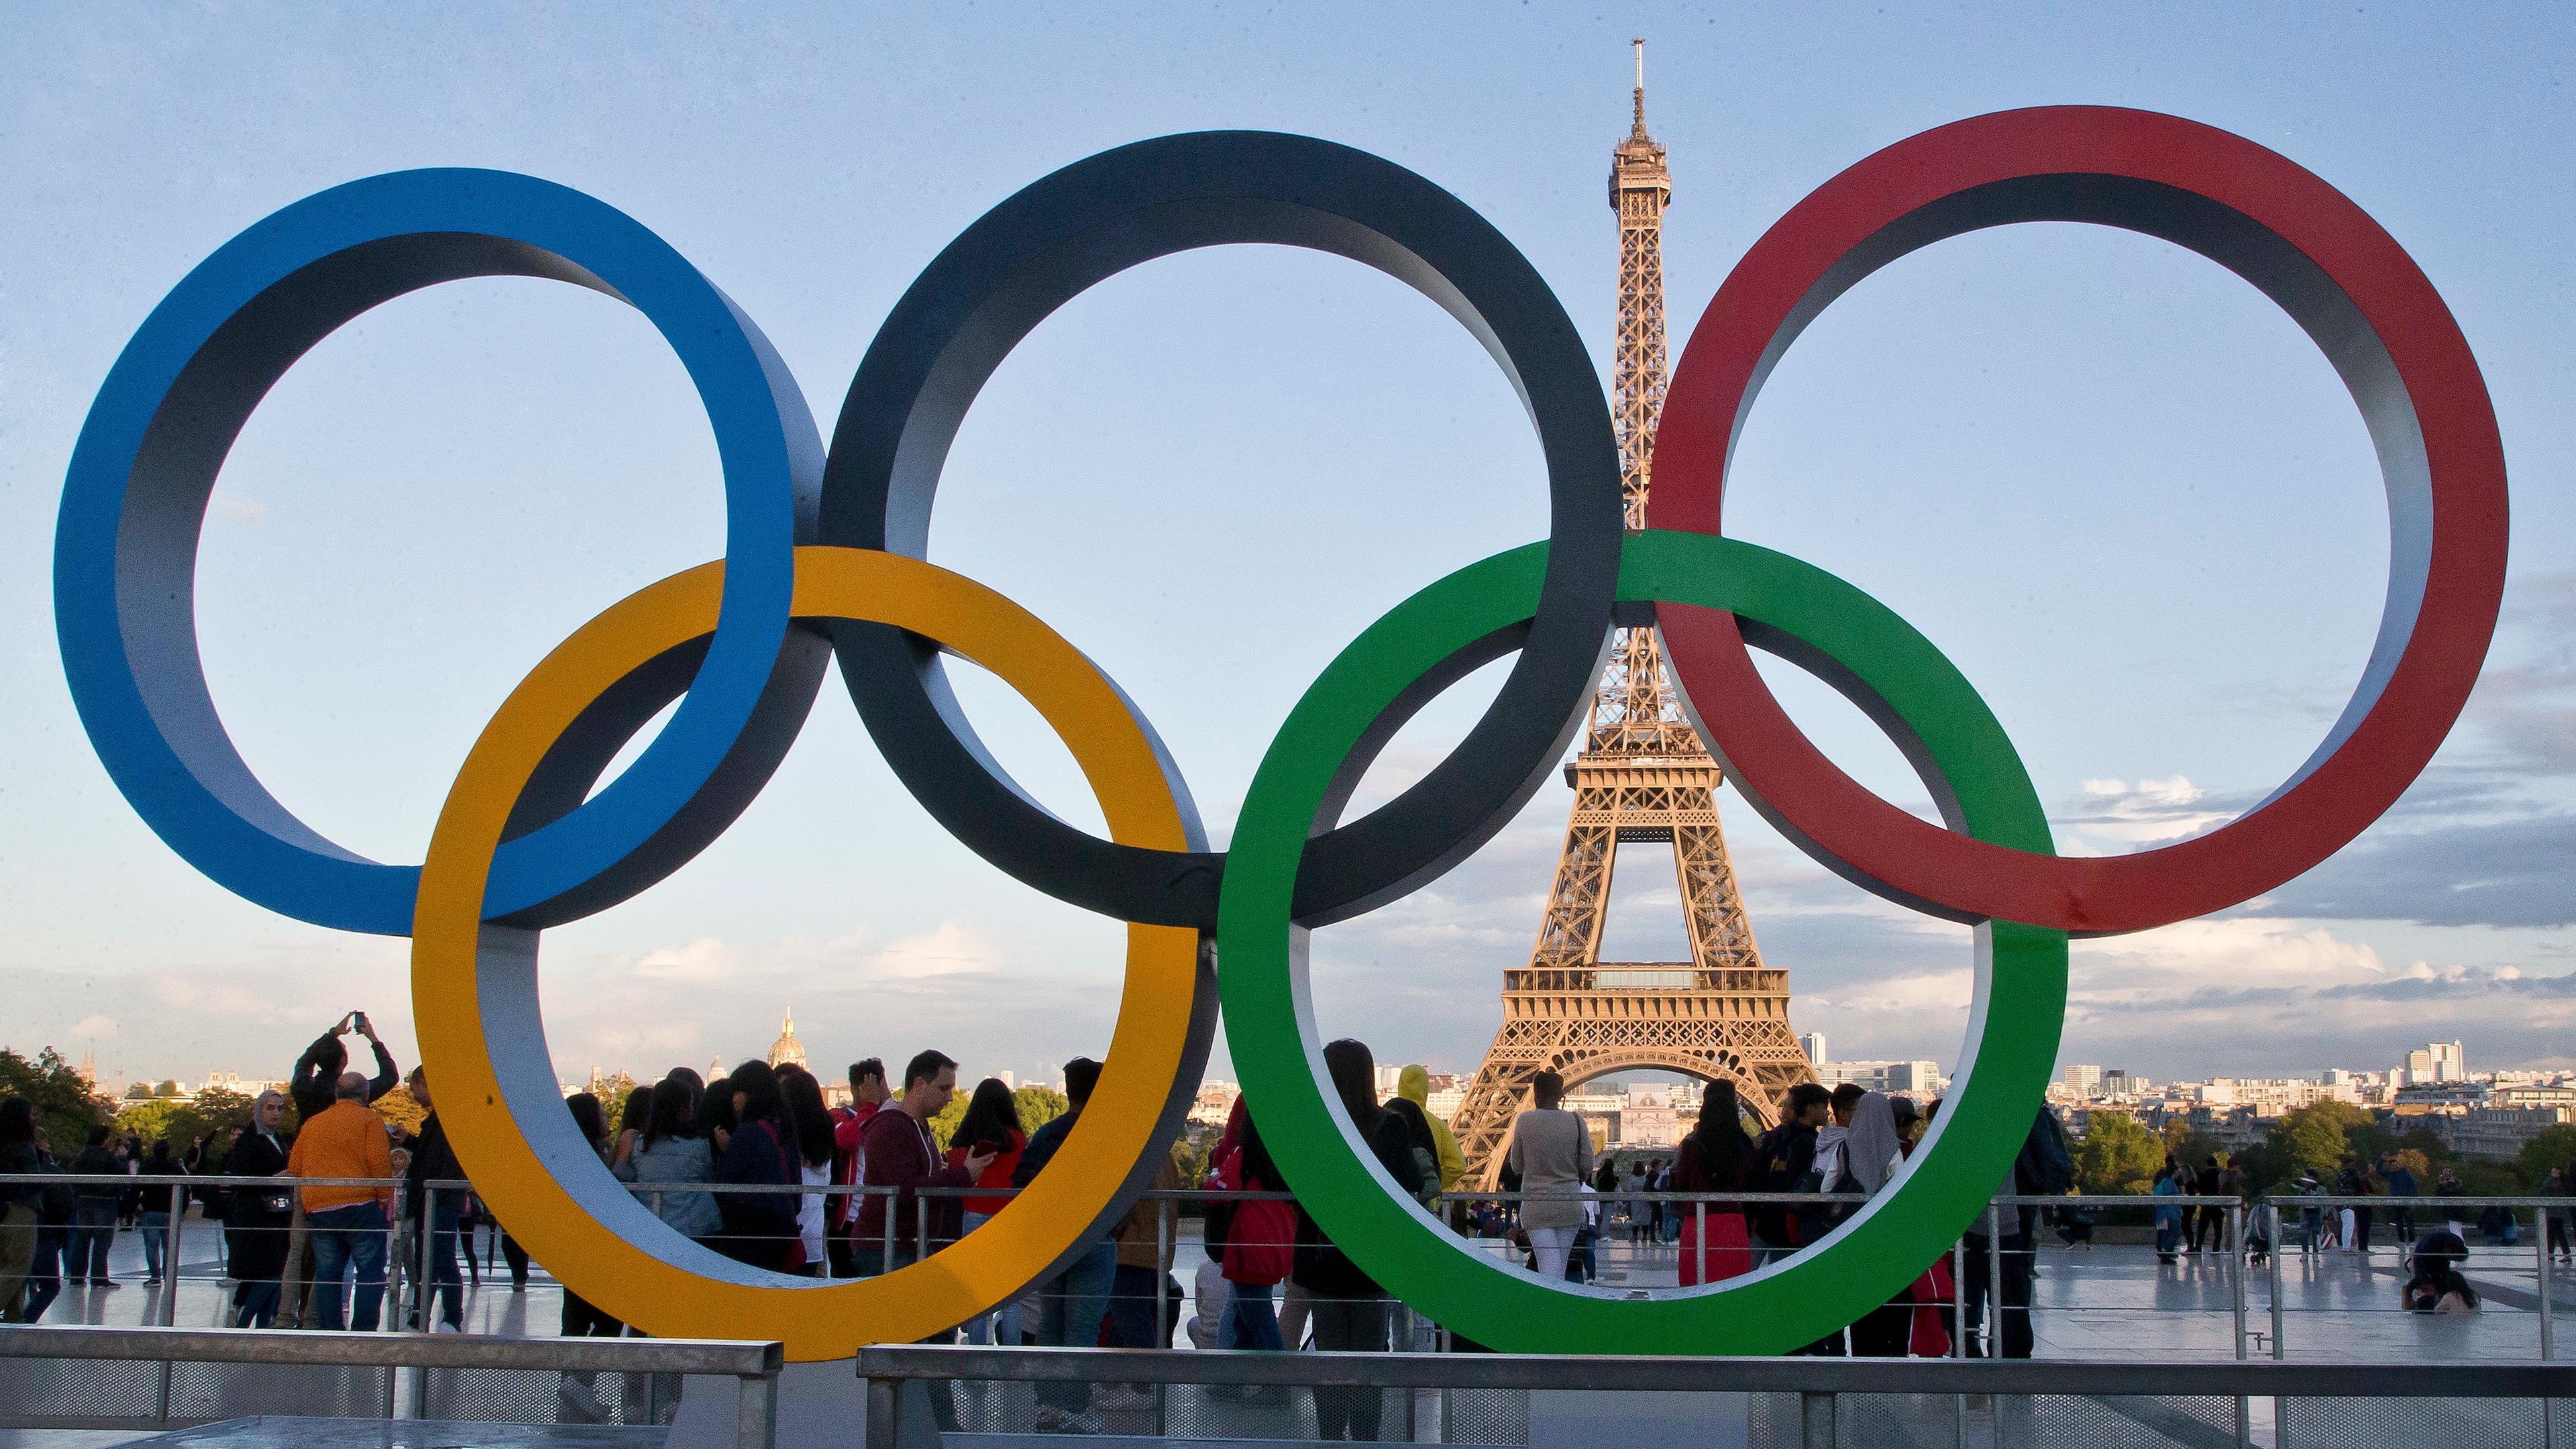 ie Olympischen Ringe 2017 in Paris vor dem Eiffelturm